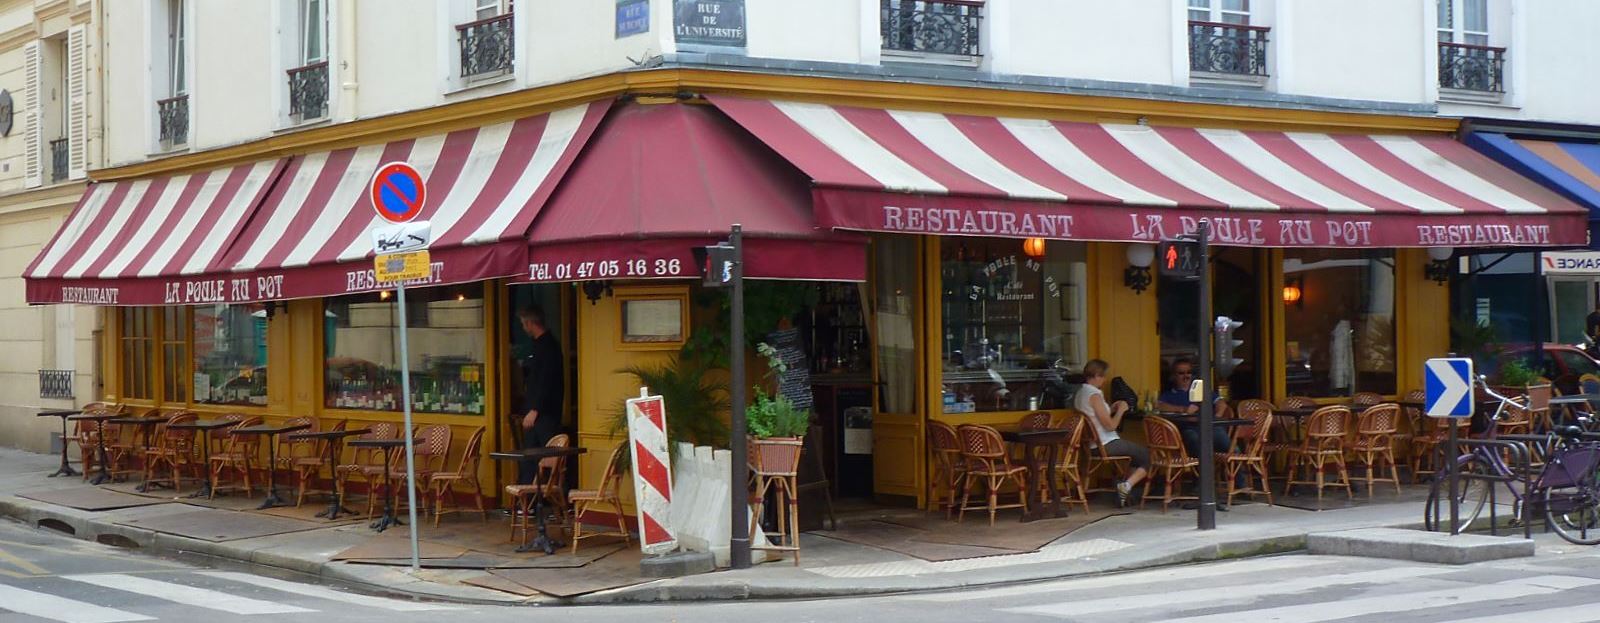 Париж, ресторан La Poule au Pot